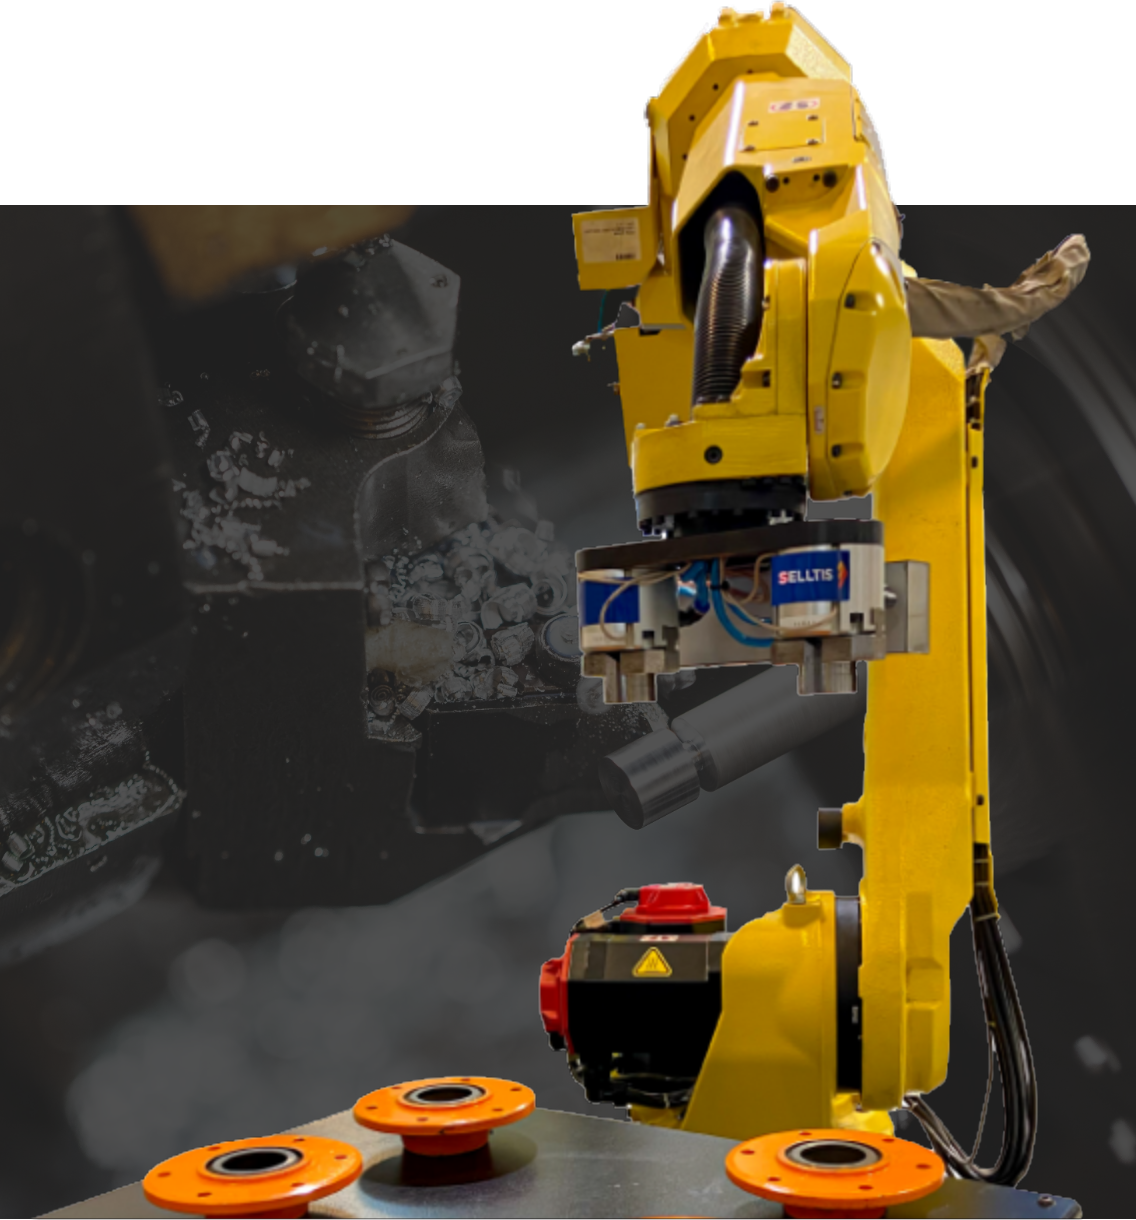 maquina robotica Selltis